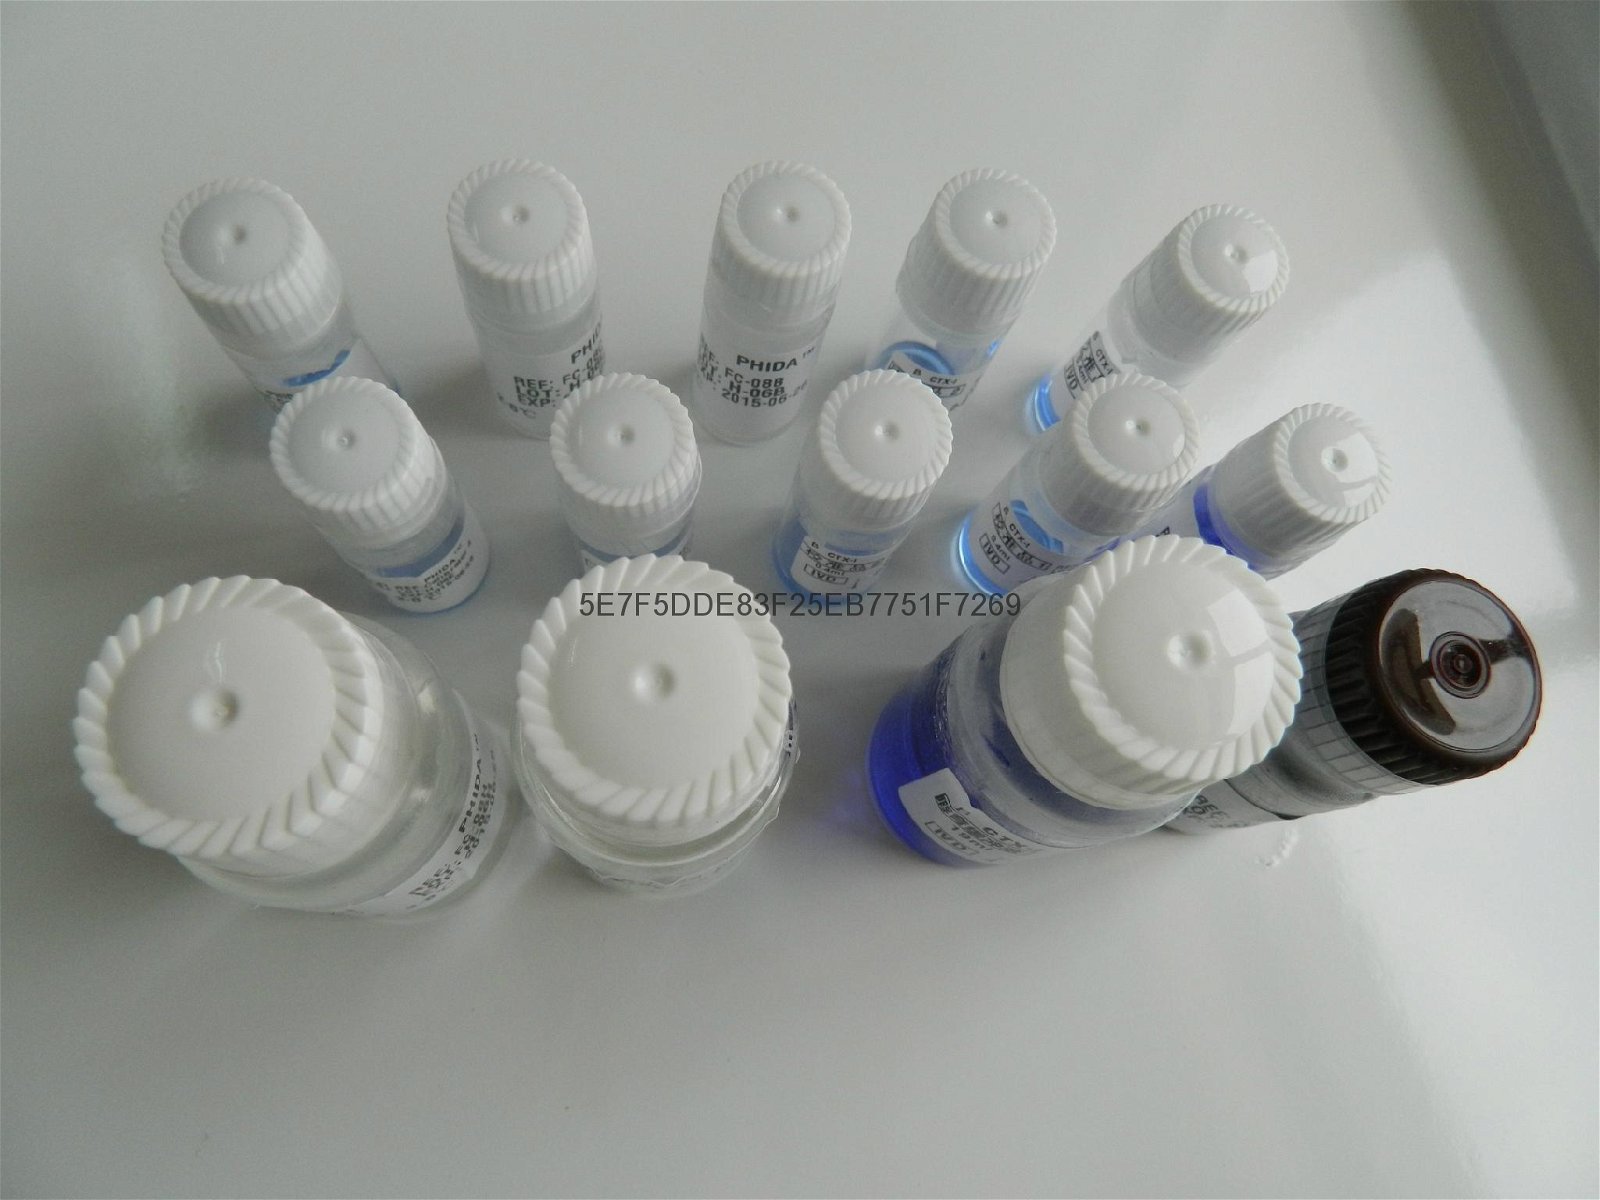 血清抗酒石酸酸性磷酸酶5b檢測試劑盒